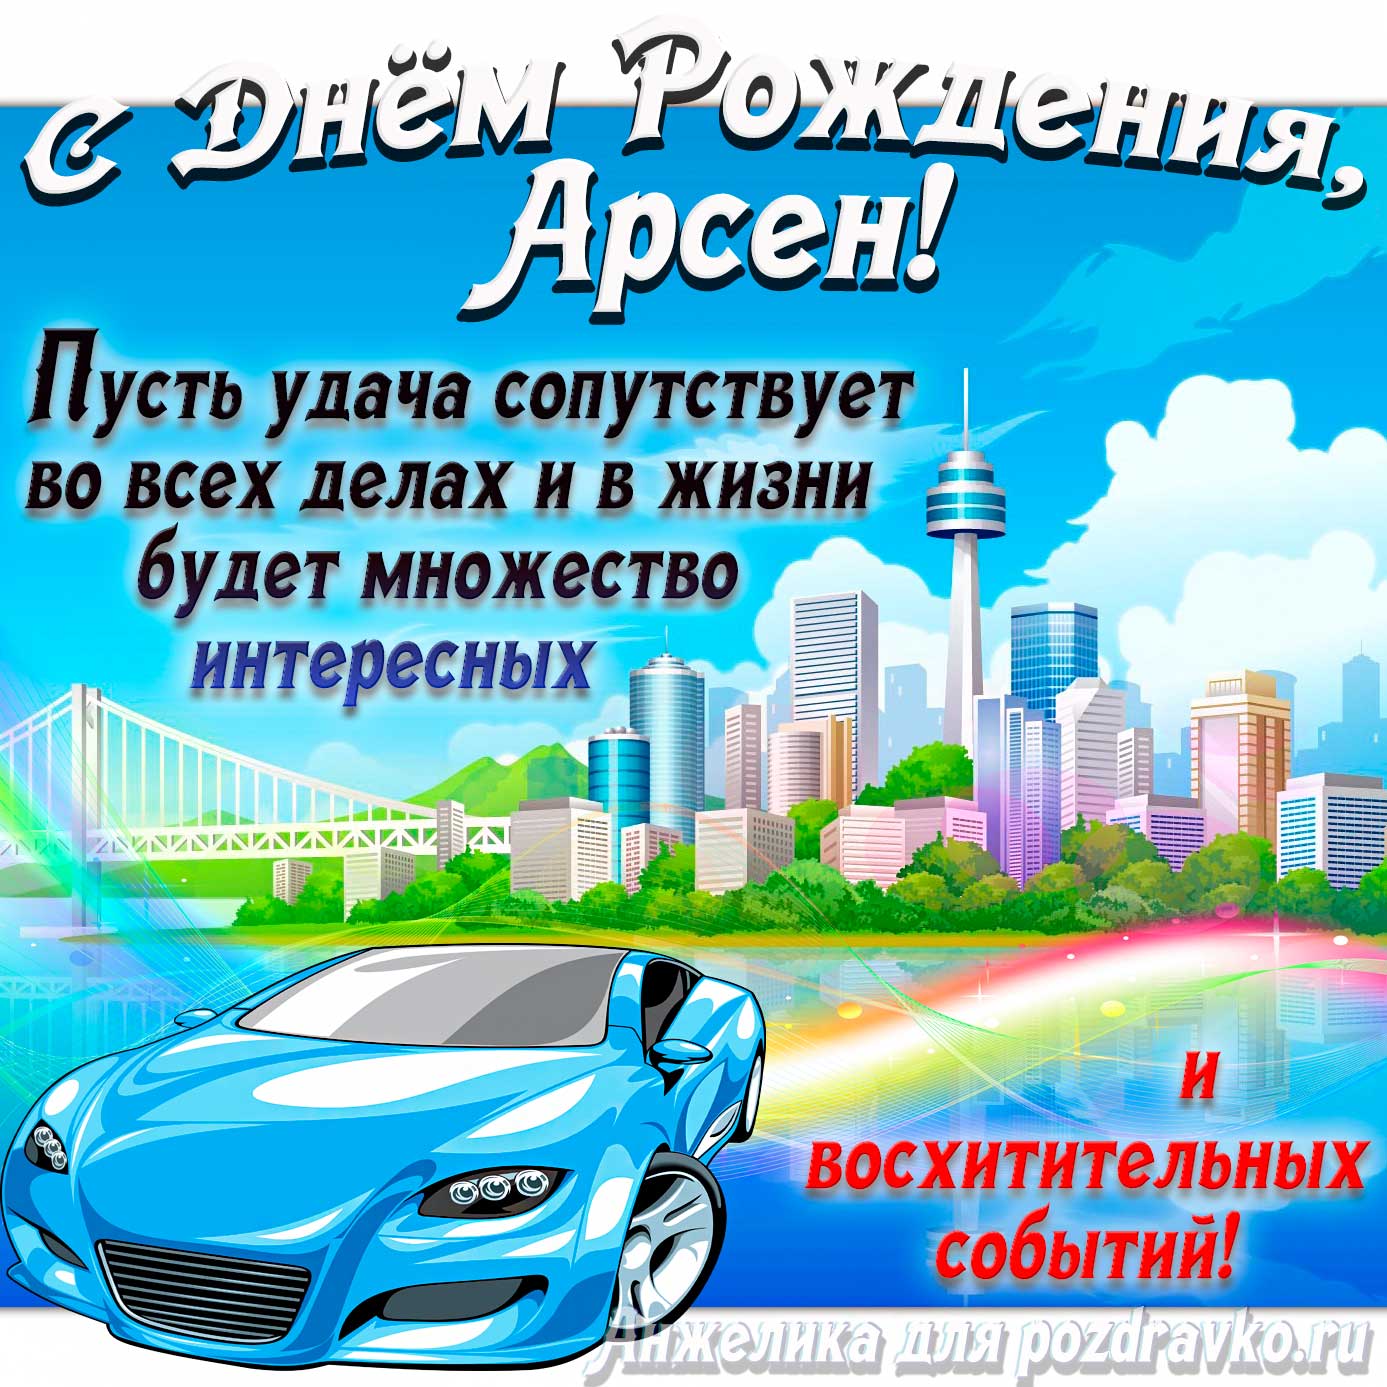 Открытка - с Днём Рождения Арсен с голубой машиной и пожеланием. Скачать бесплатно или отправить картинку.